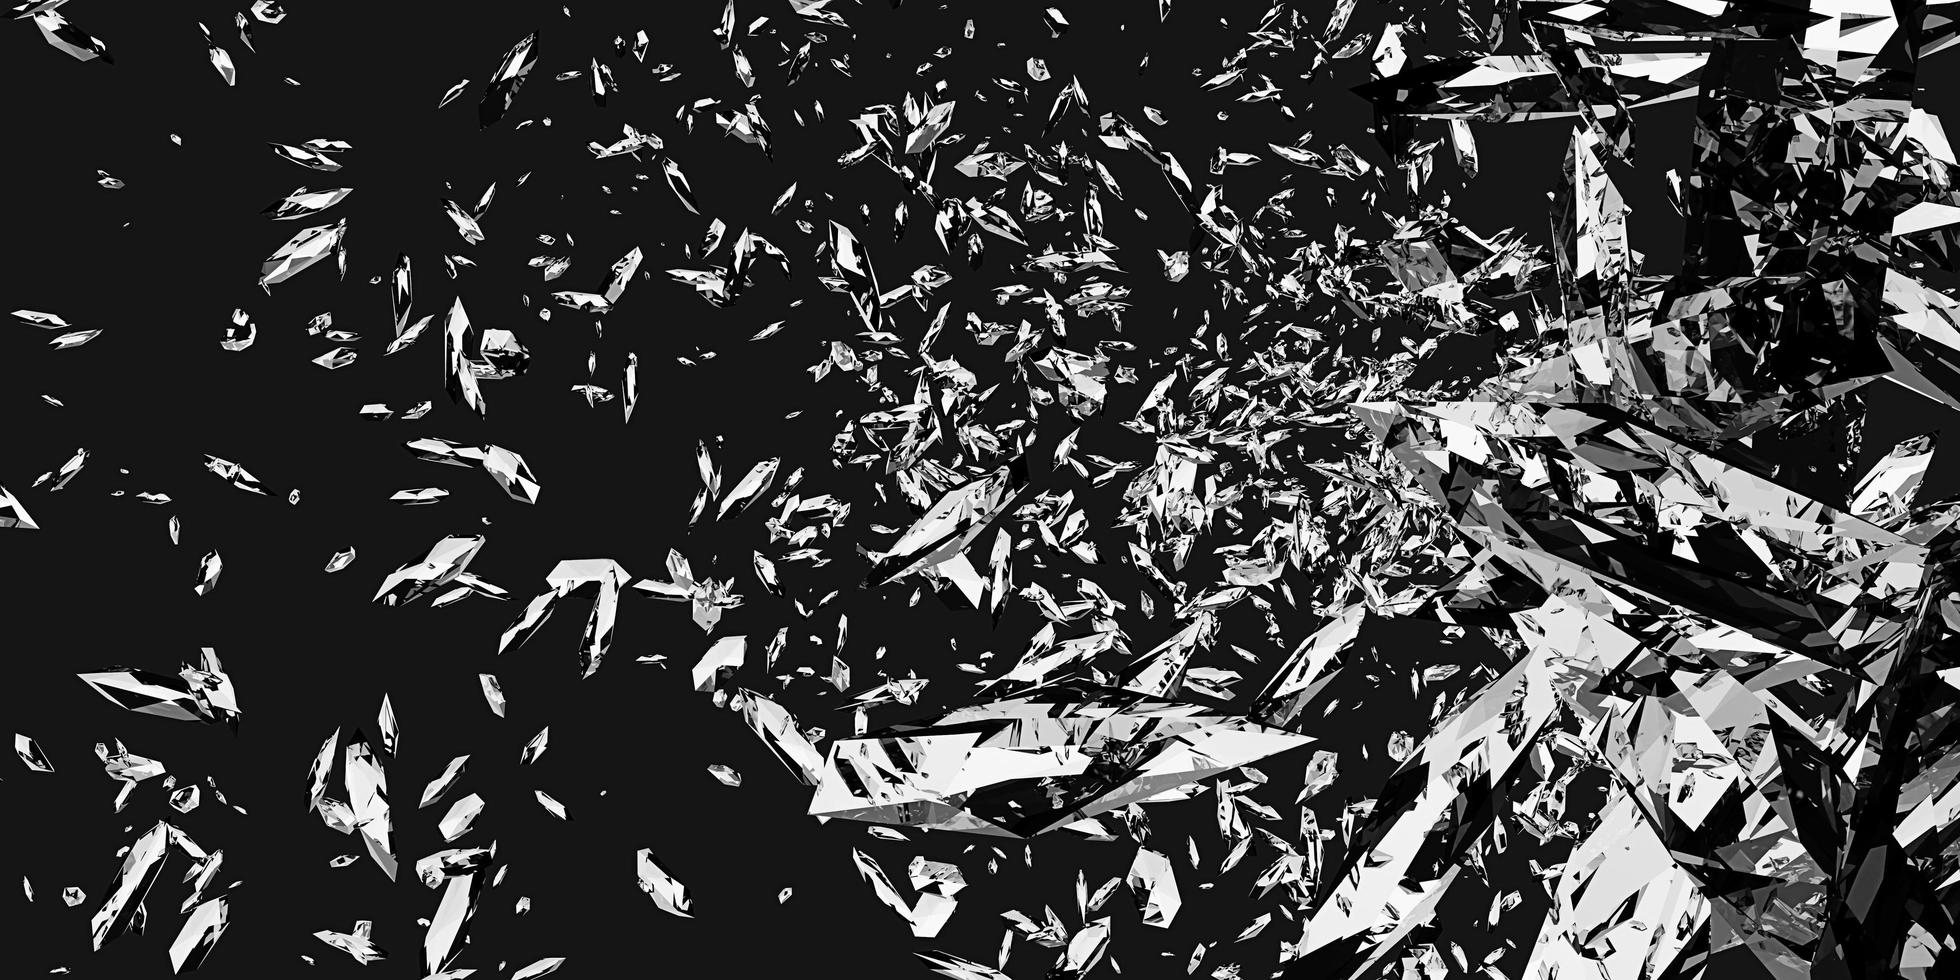 zerbrochenes glas zerbrochenes glas staubpartikel explosionsfragmente verstreuter hintergrund 3d illustration foto